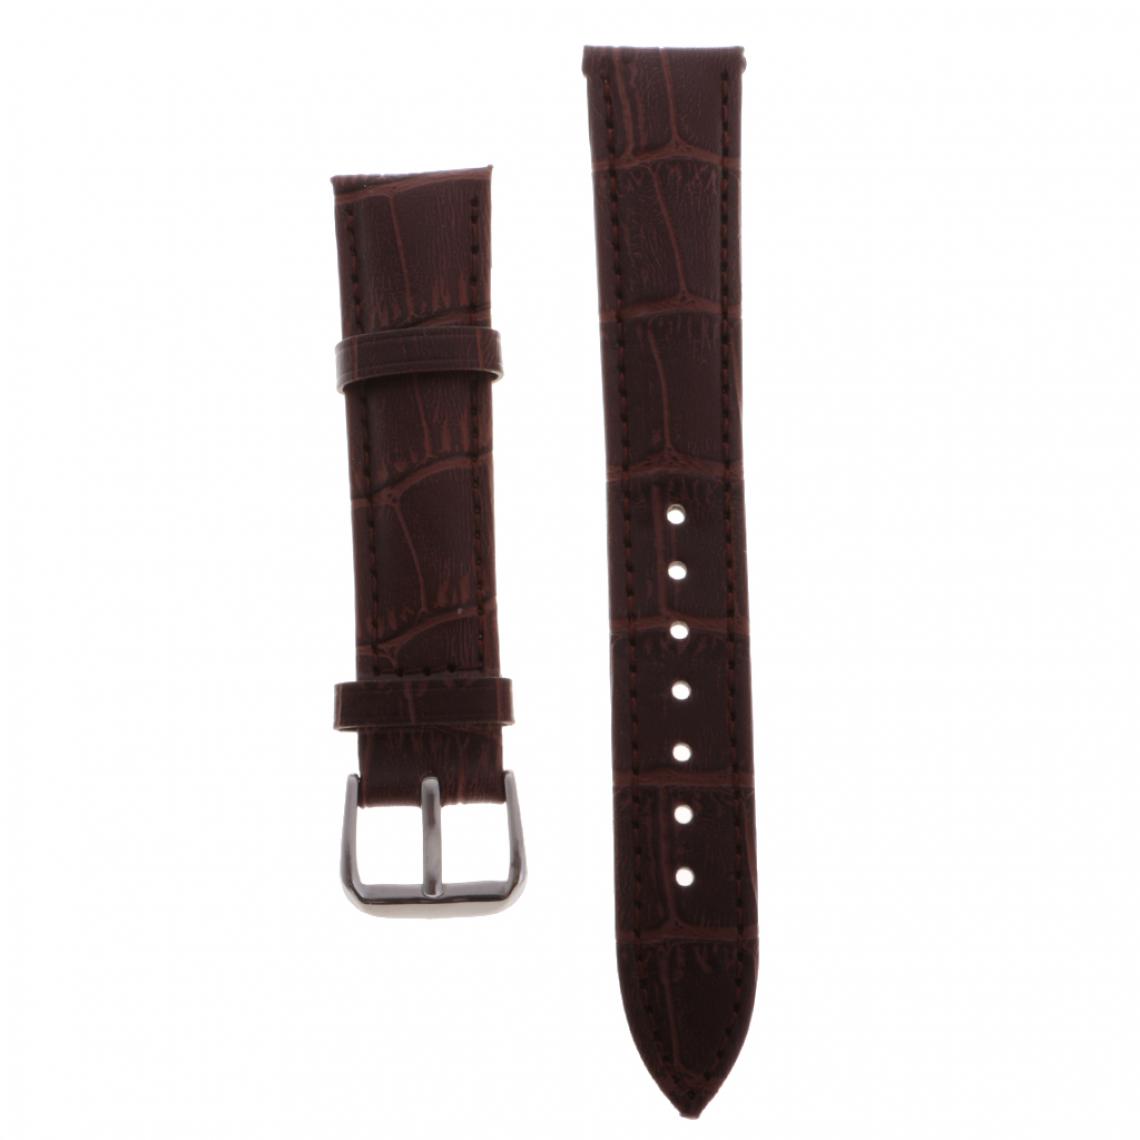 marque generique - Bracelet en cuir de haute qualité bracelet bracelet pour montres 20mm noir - Accessoires montres connectées